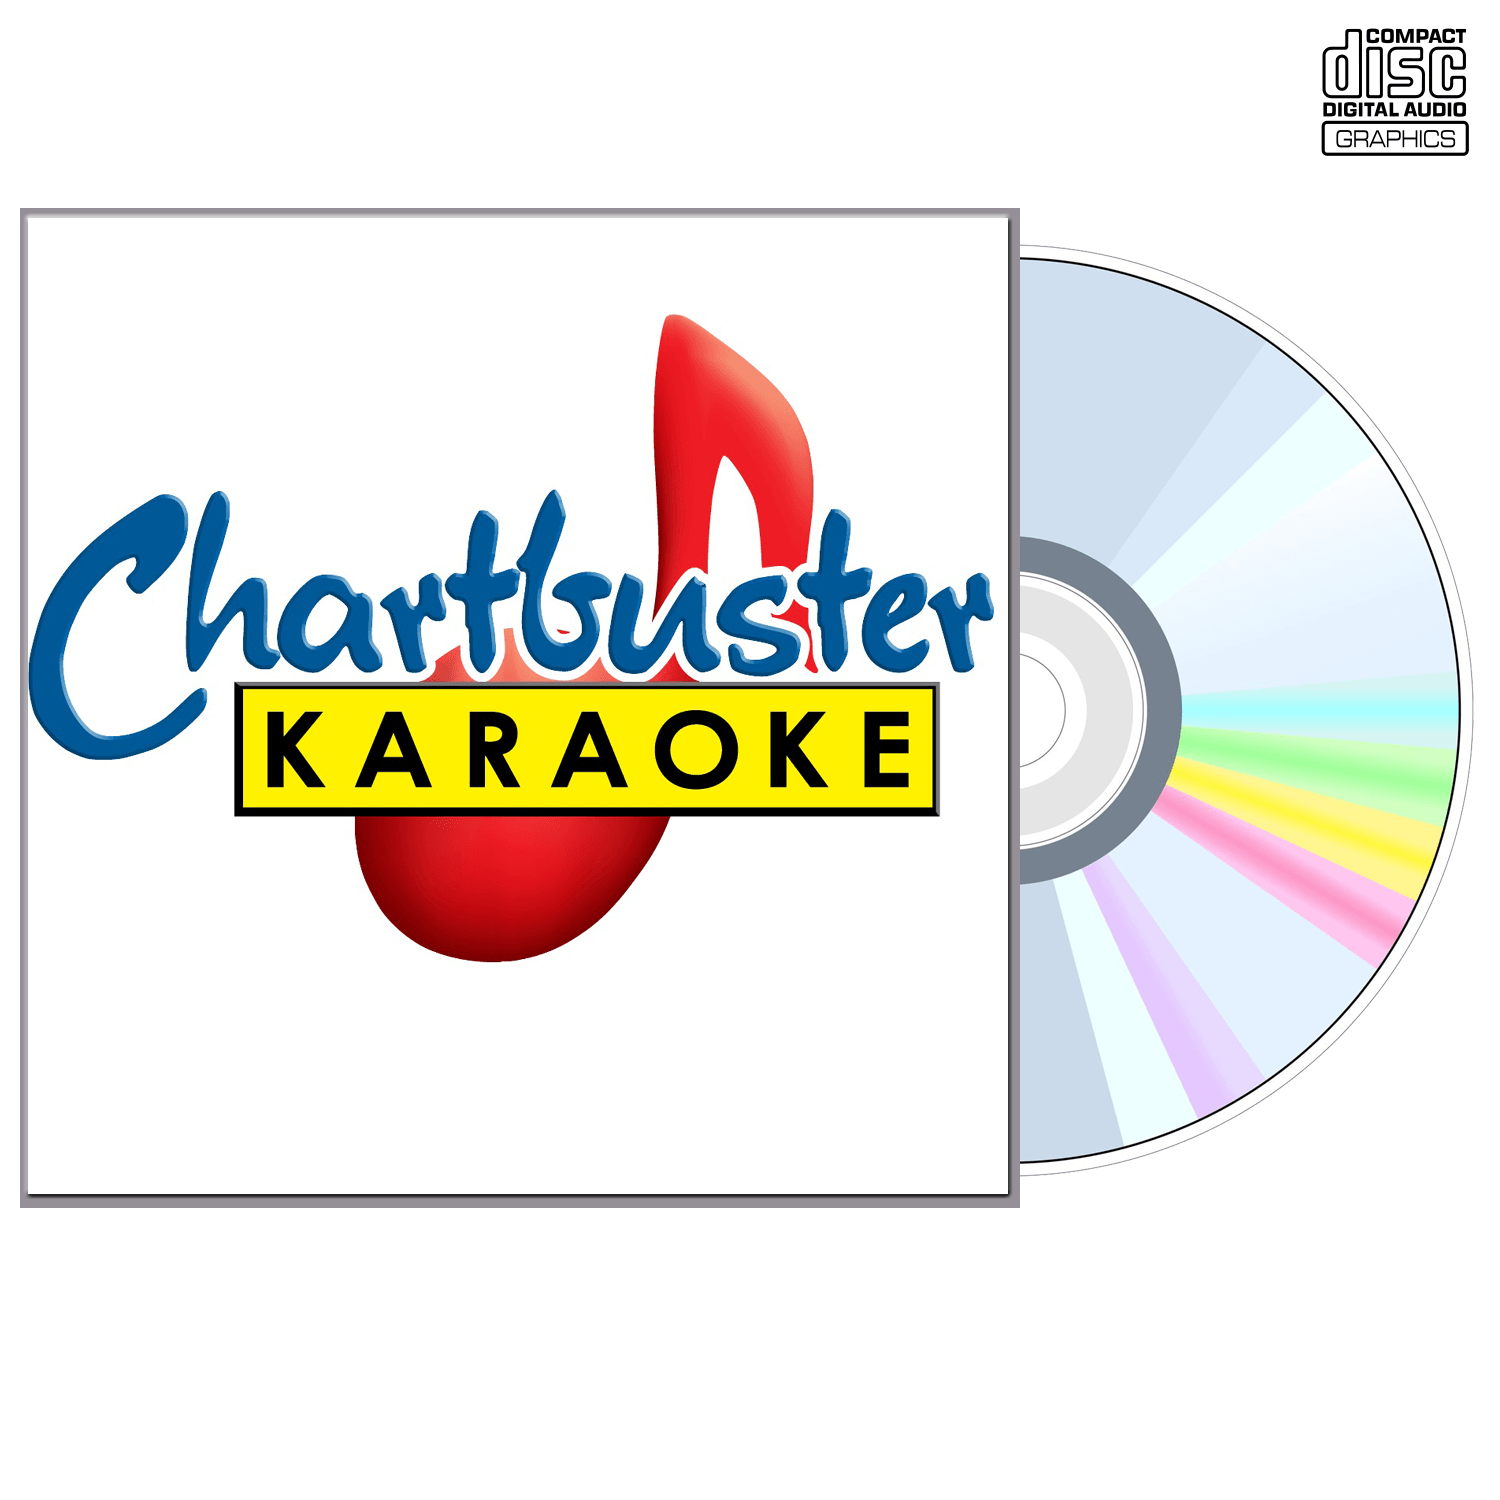 Burl Ives - CD+G - Chartbuster Karaoke - Karaoke Home Entertainment